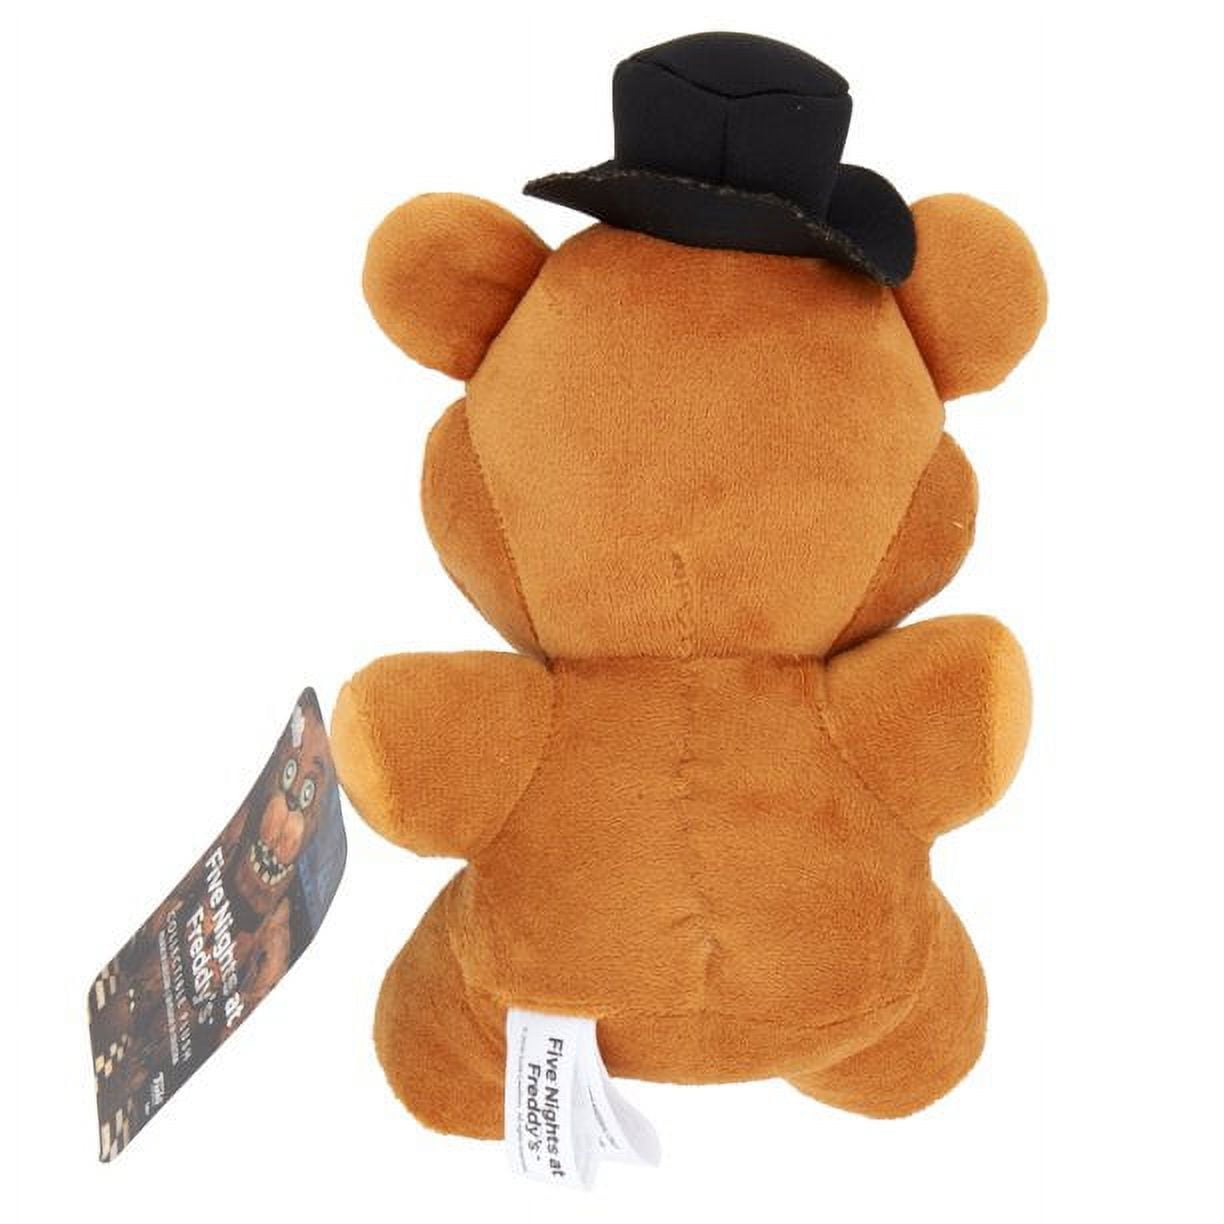 Golden Freddy Fazbear Mangle Foxy Bear Bonnie Chica Fnaf Plush Shopee 18cm Five  Nights At Freddys Stuffed Toys From Party2000, $7.45